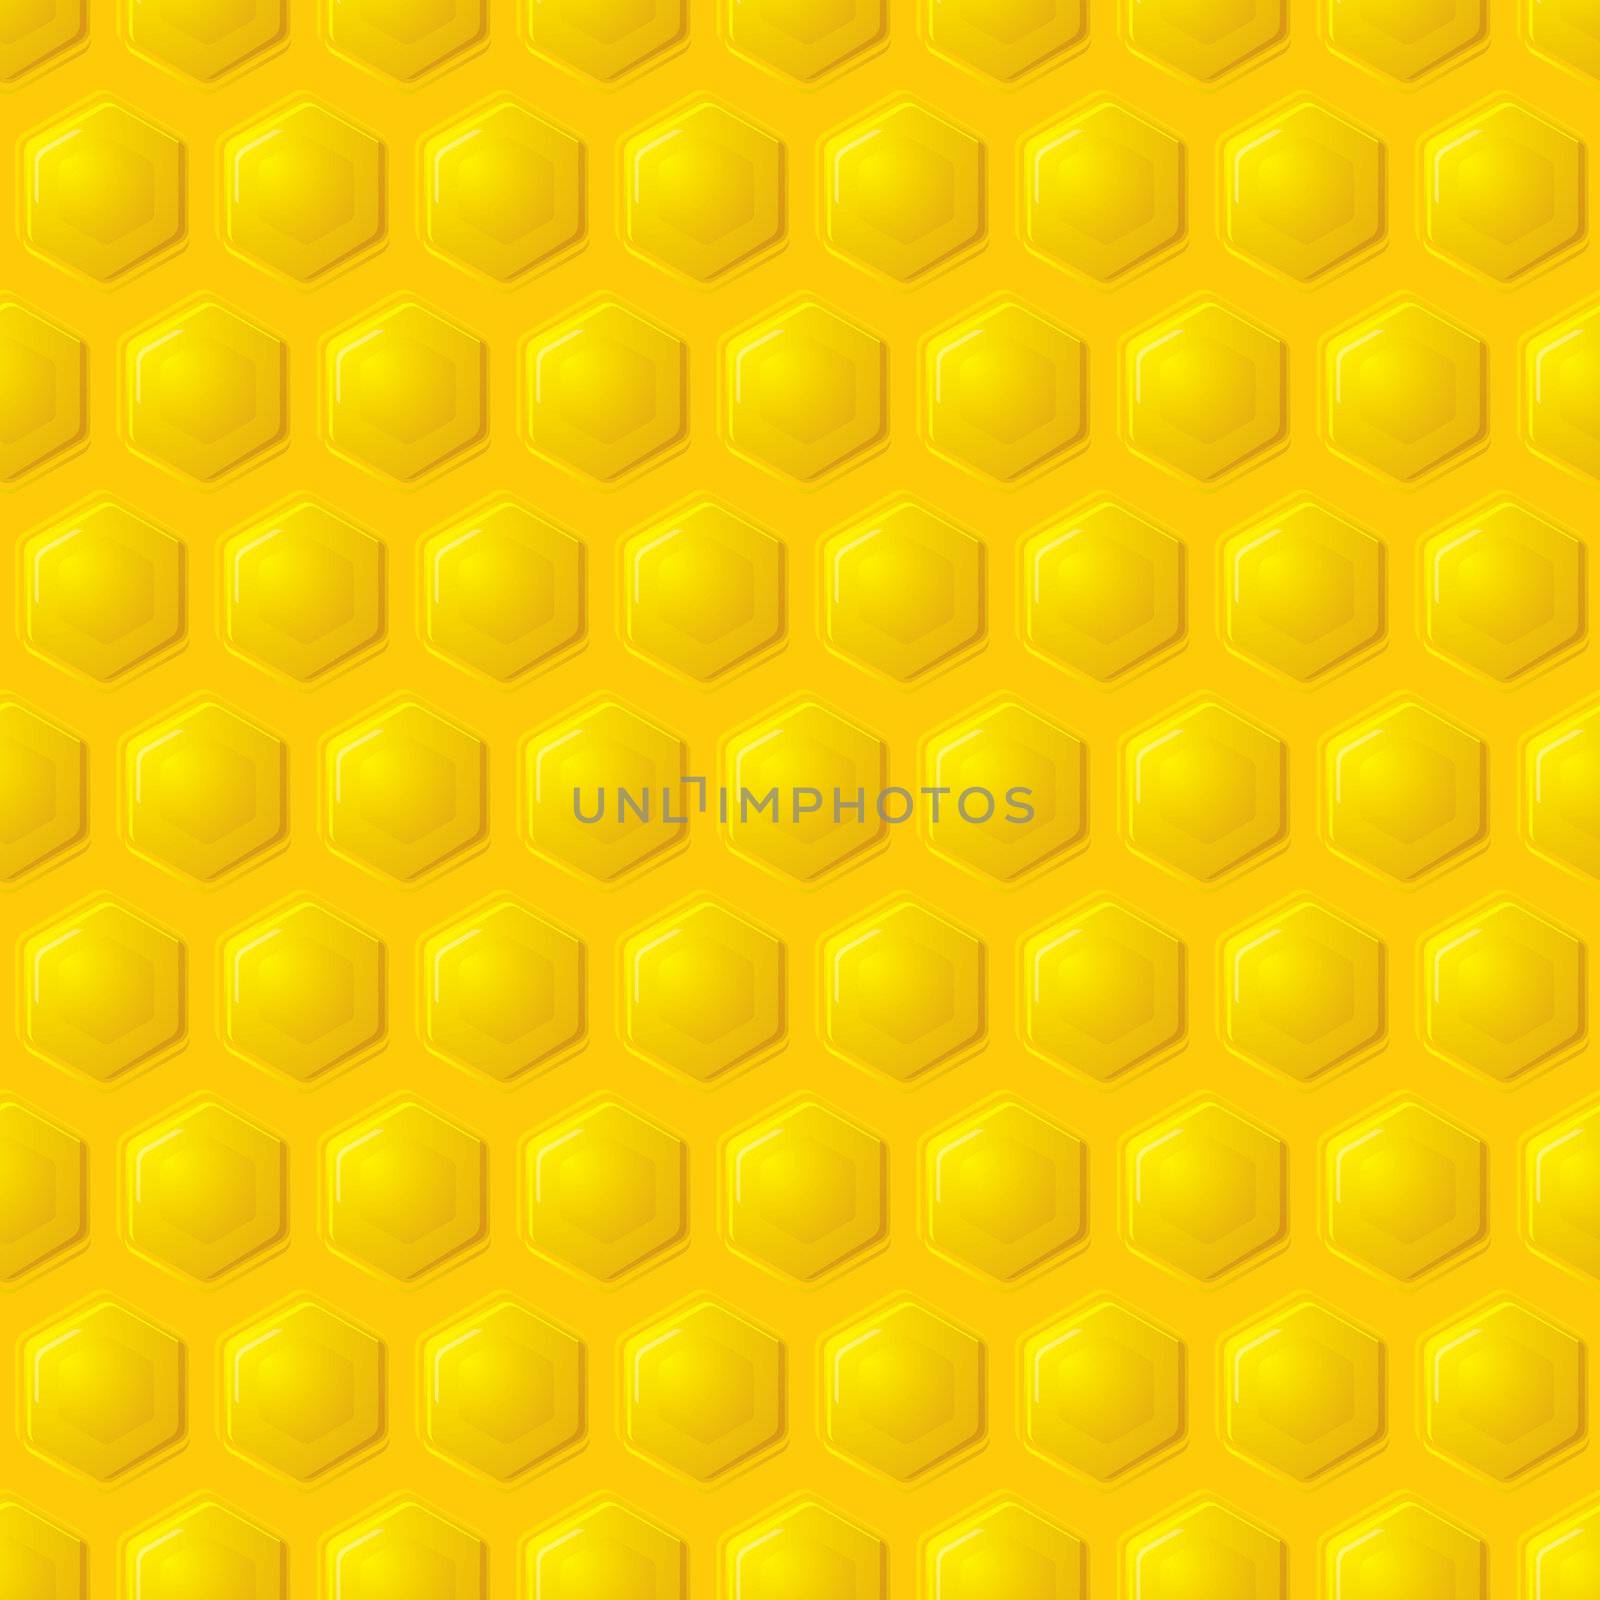 Golden honeycomb seamless wallpaper pattern design concept